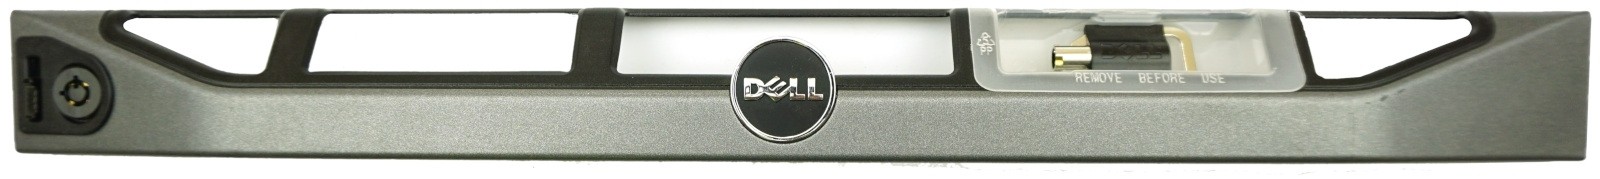 Dell PowerEdge R320, R420, R430, R620, R630 Front Bezel No Logo No Key